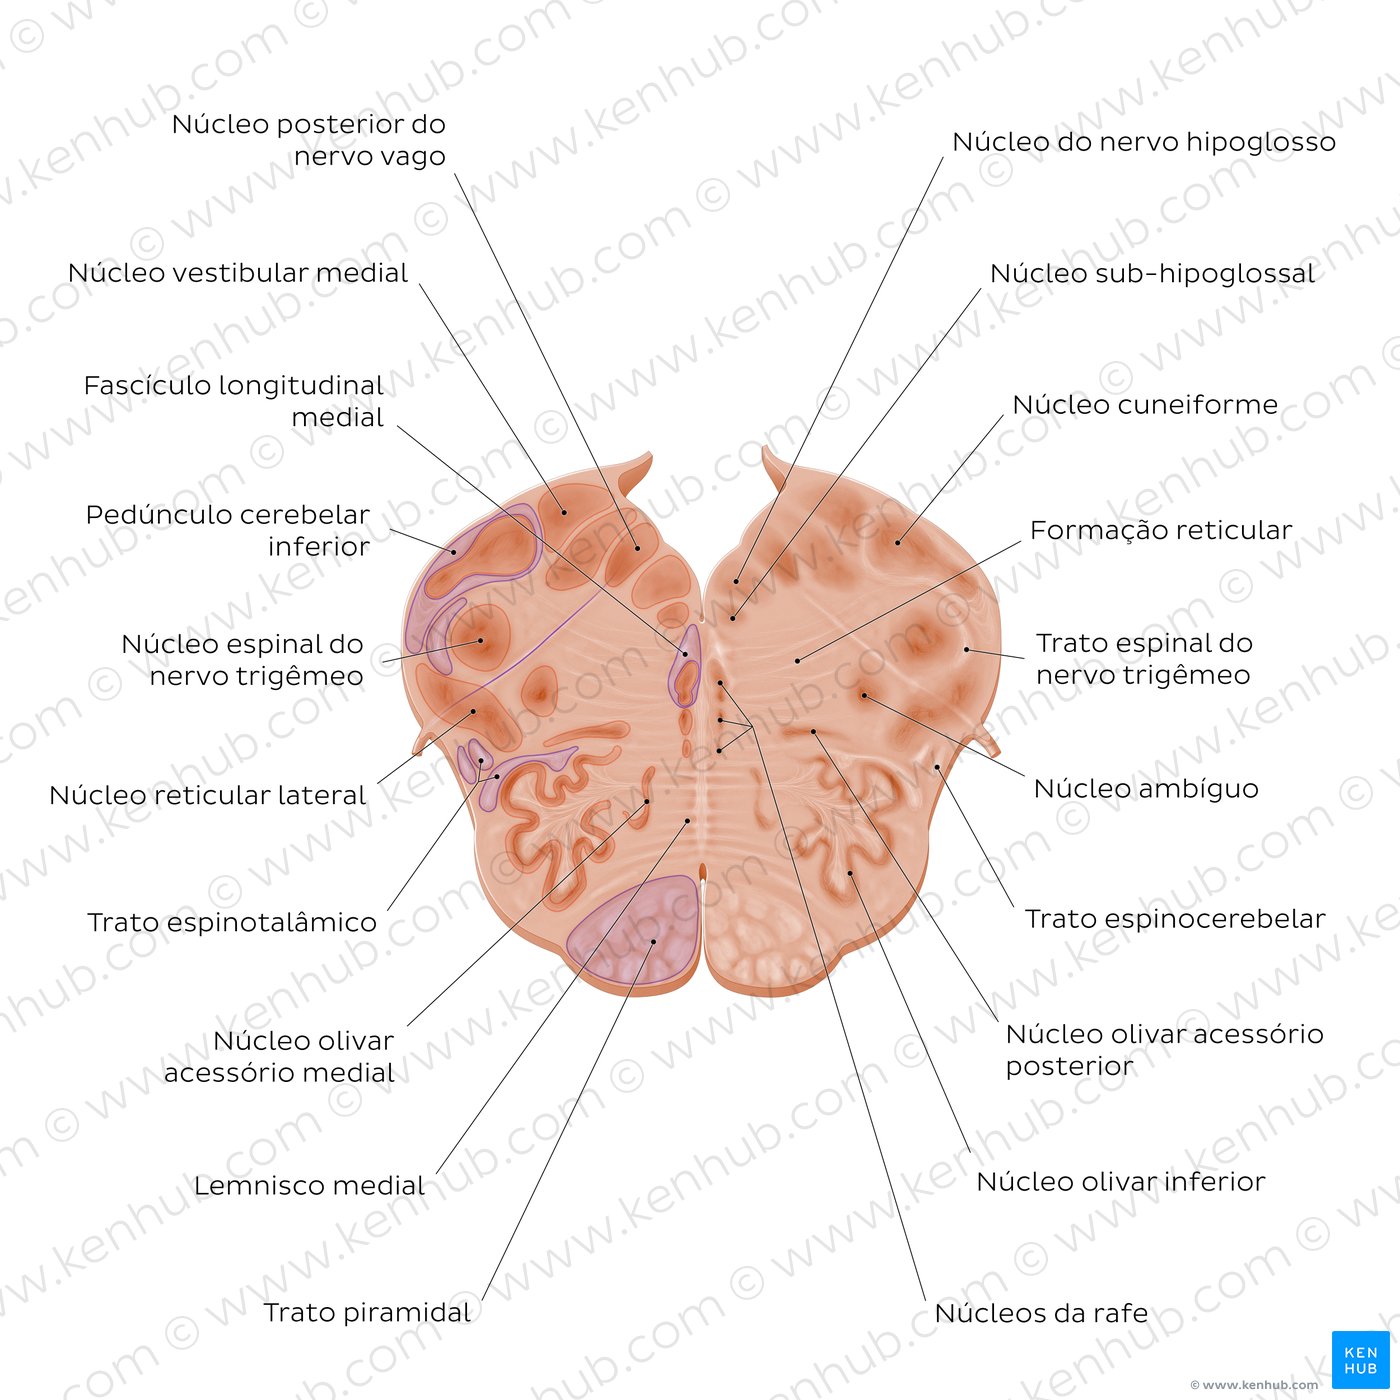 Secção coronal do bulbo ao nível do nervo vago